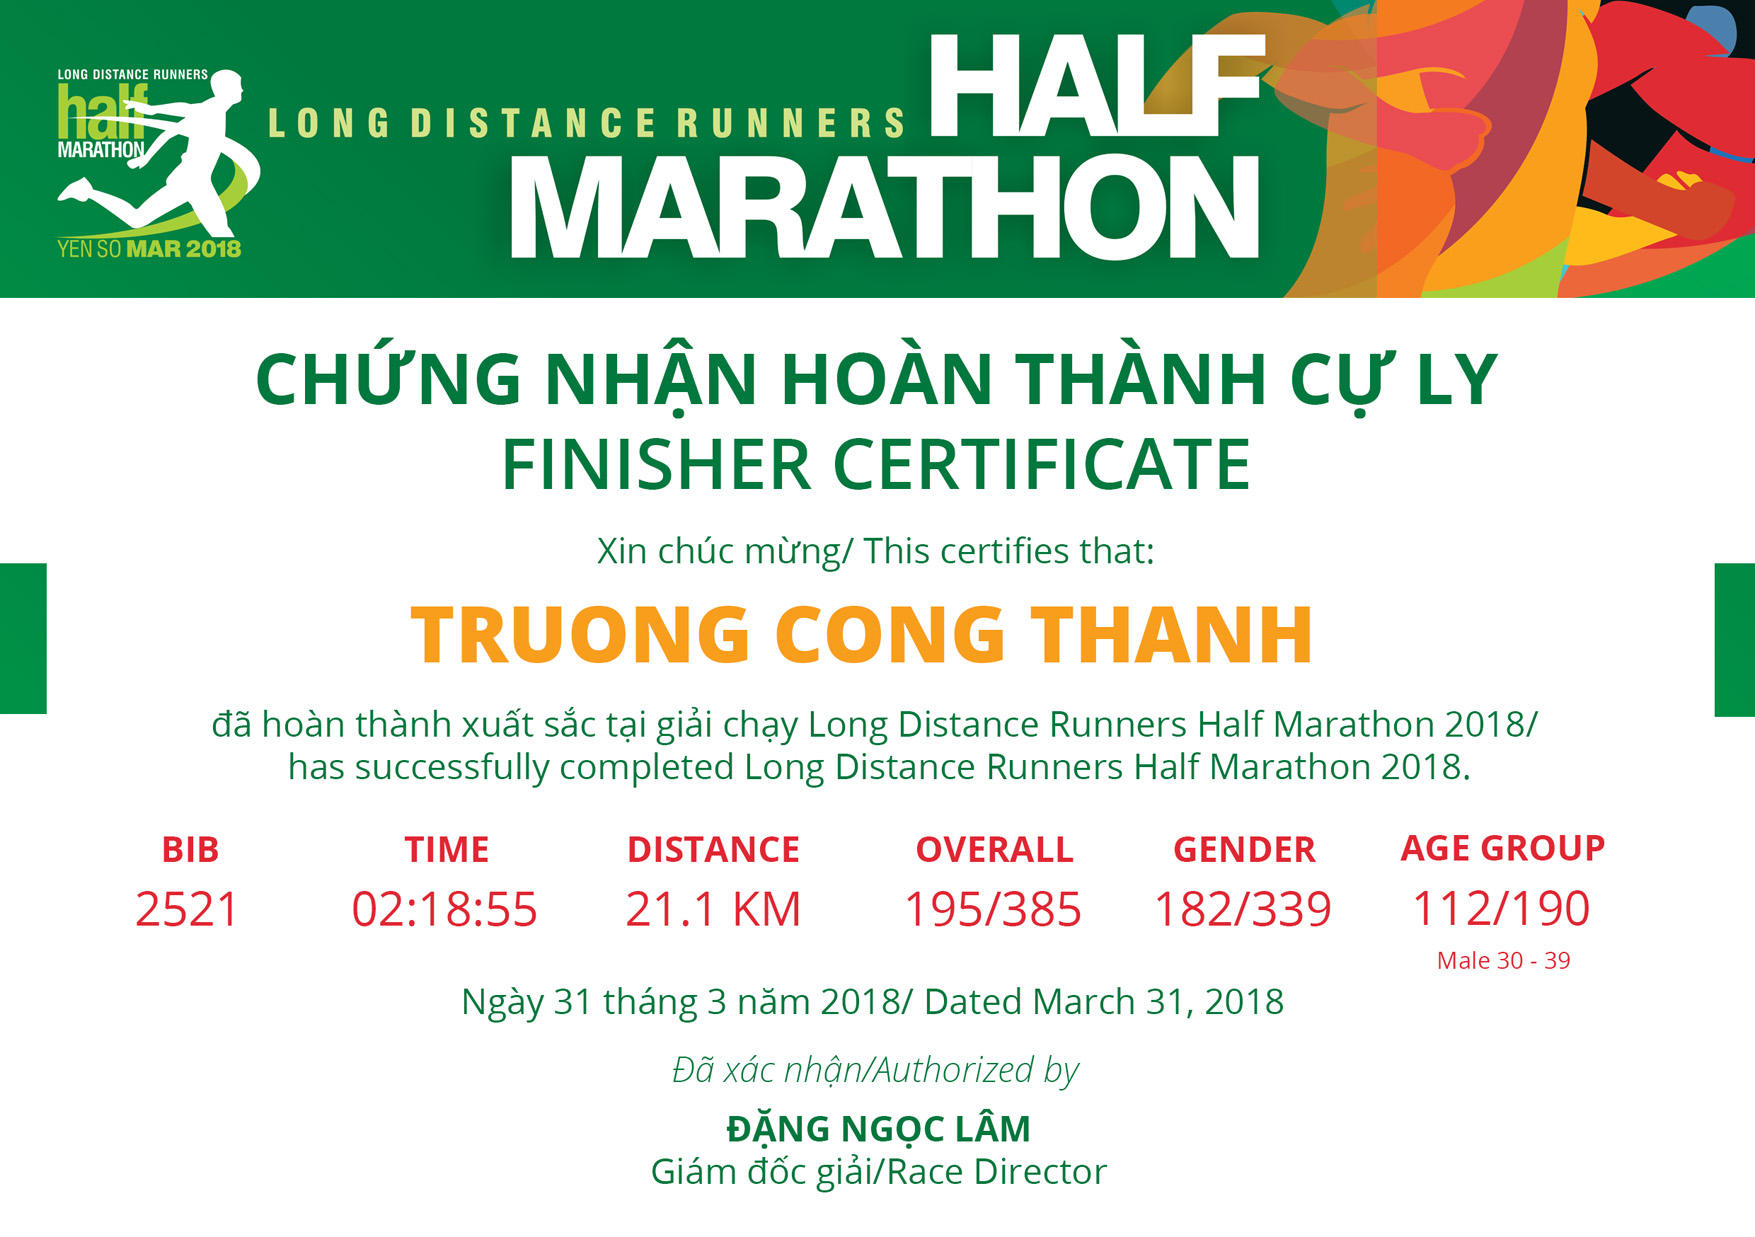 2521 - Truong Cong Thanh